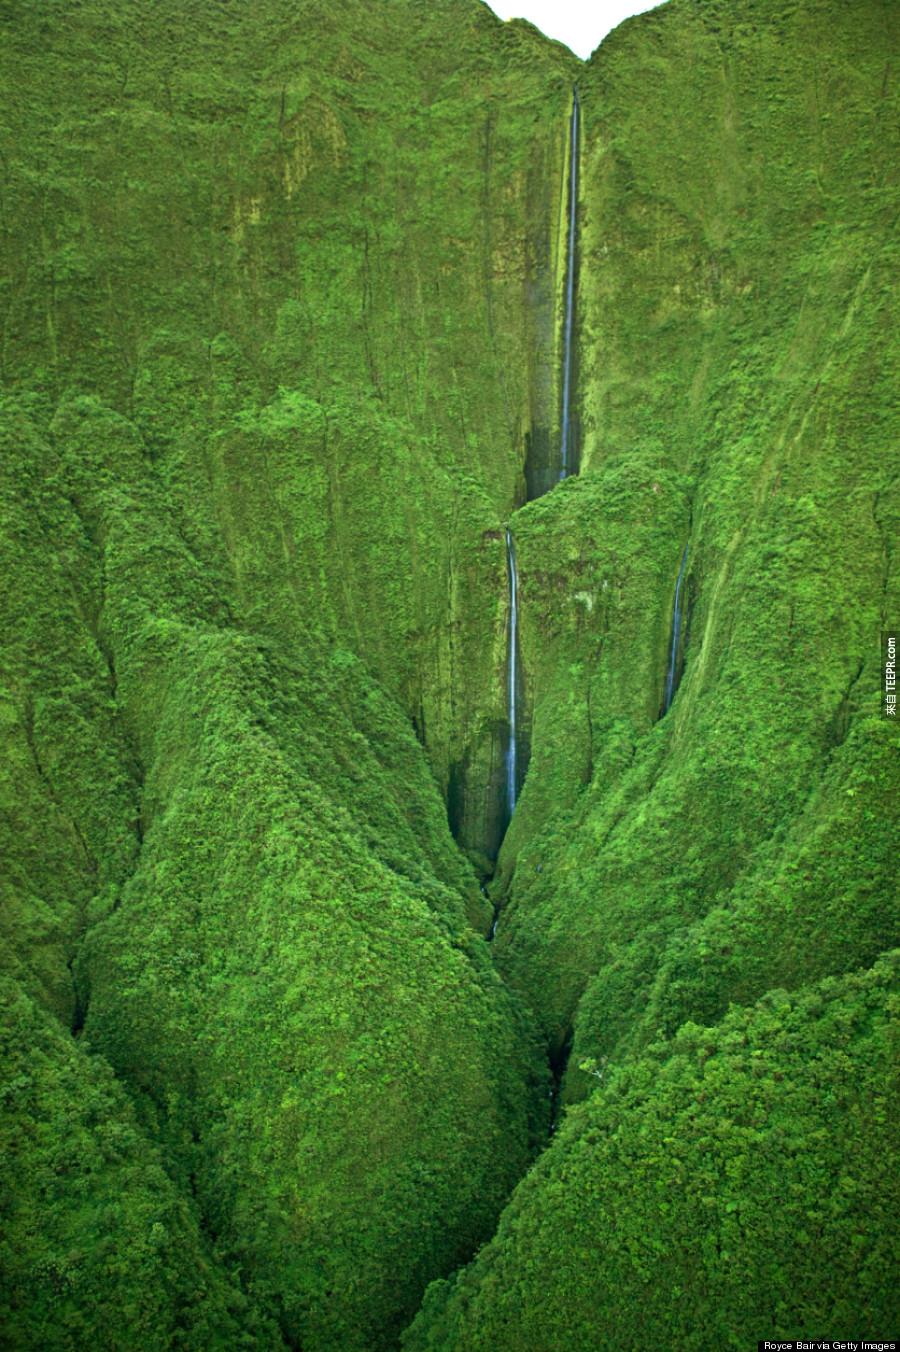 2) Honokohau Falls, Maui.